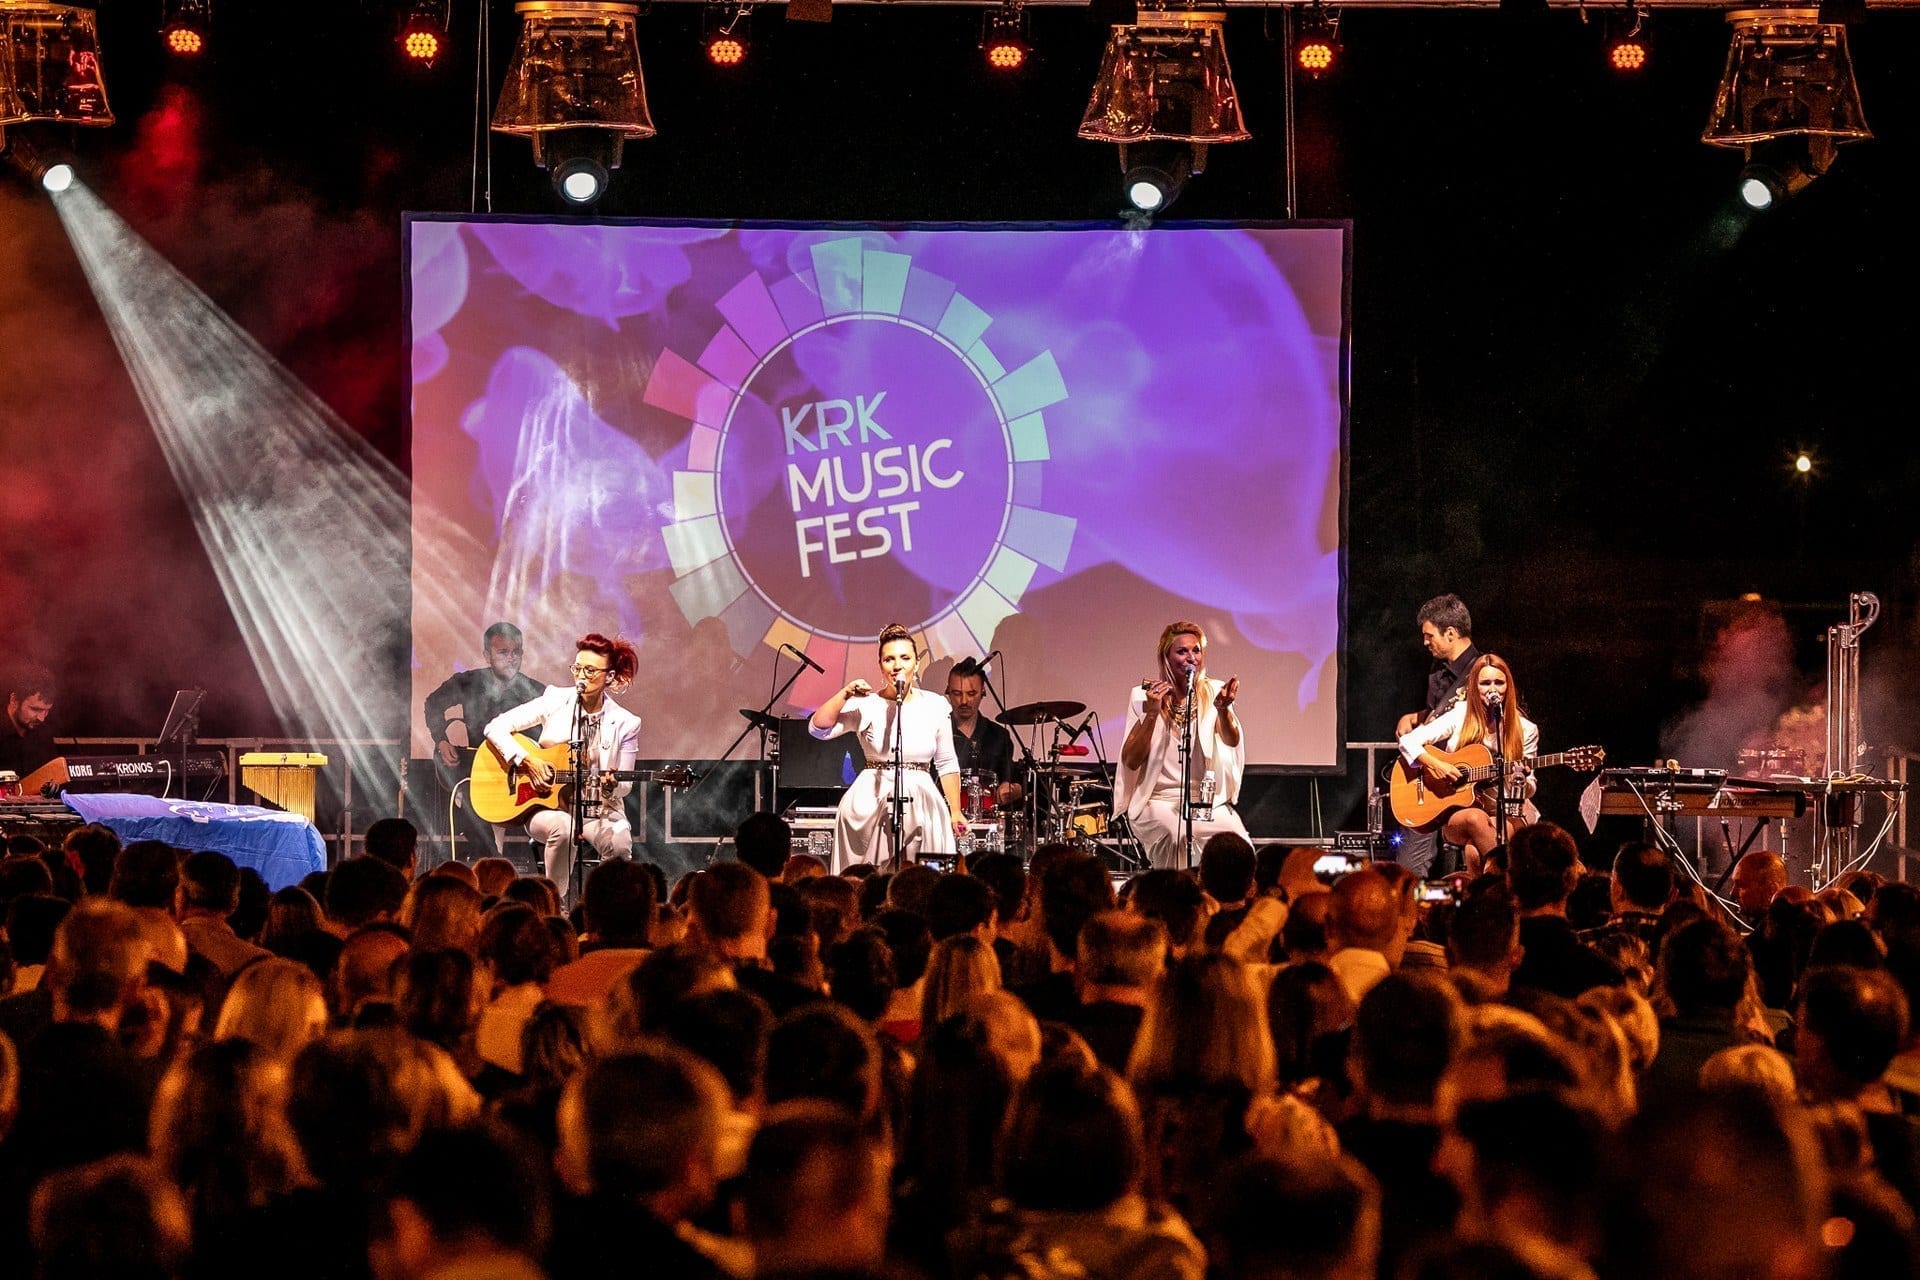 Il Krk Music Fest, città di Krk (Fonte dell’immagine: Ente per il turismo della Città di Krk)